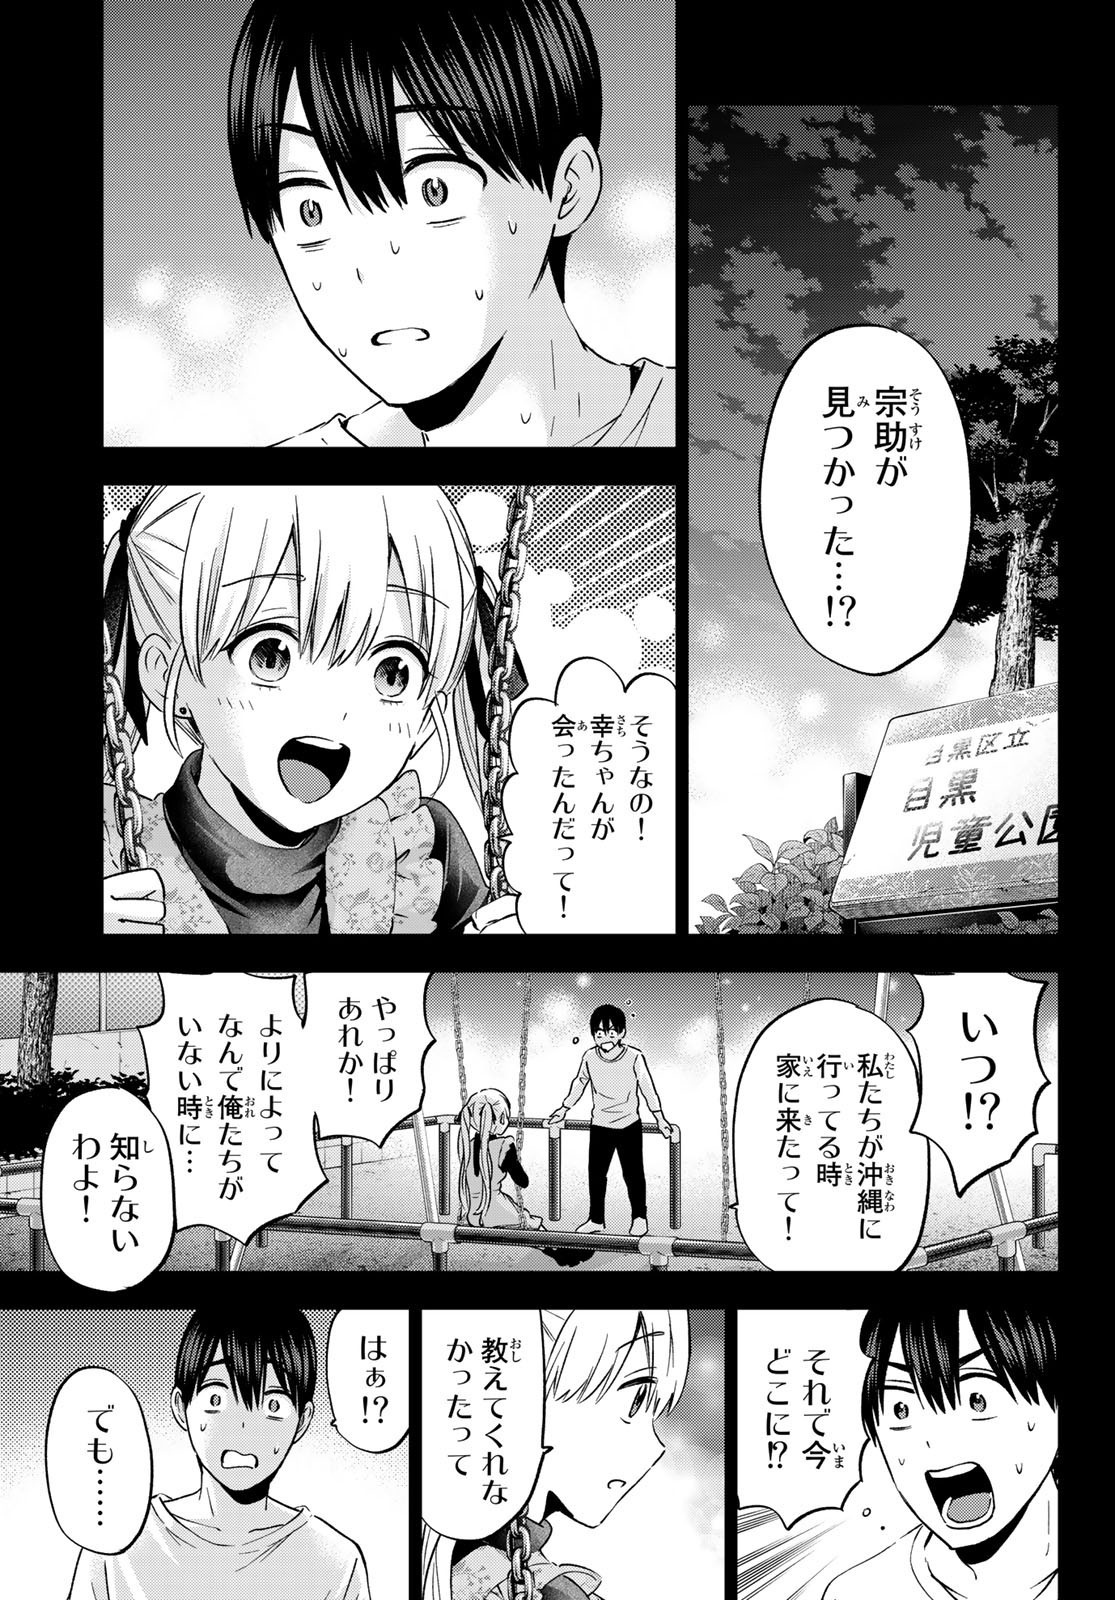 Kakkou no Iinazuke - Chapter 141 - Page 3